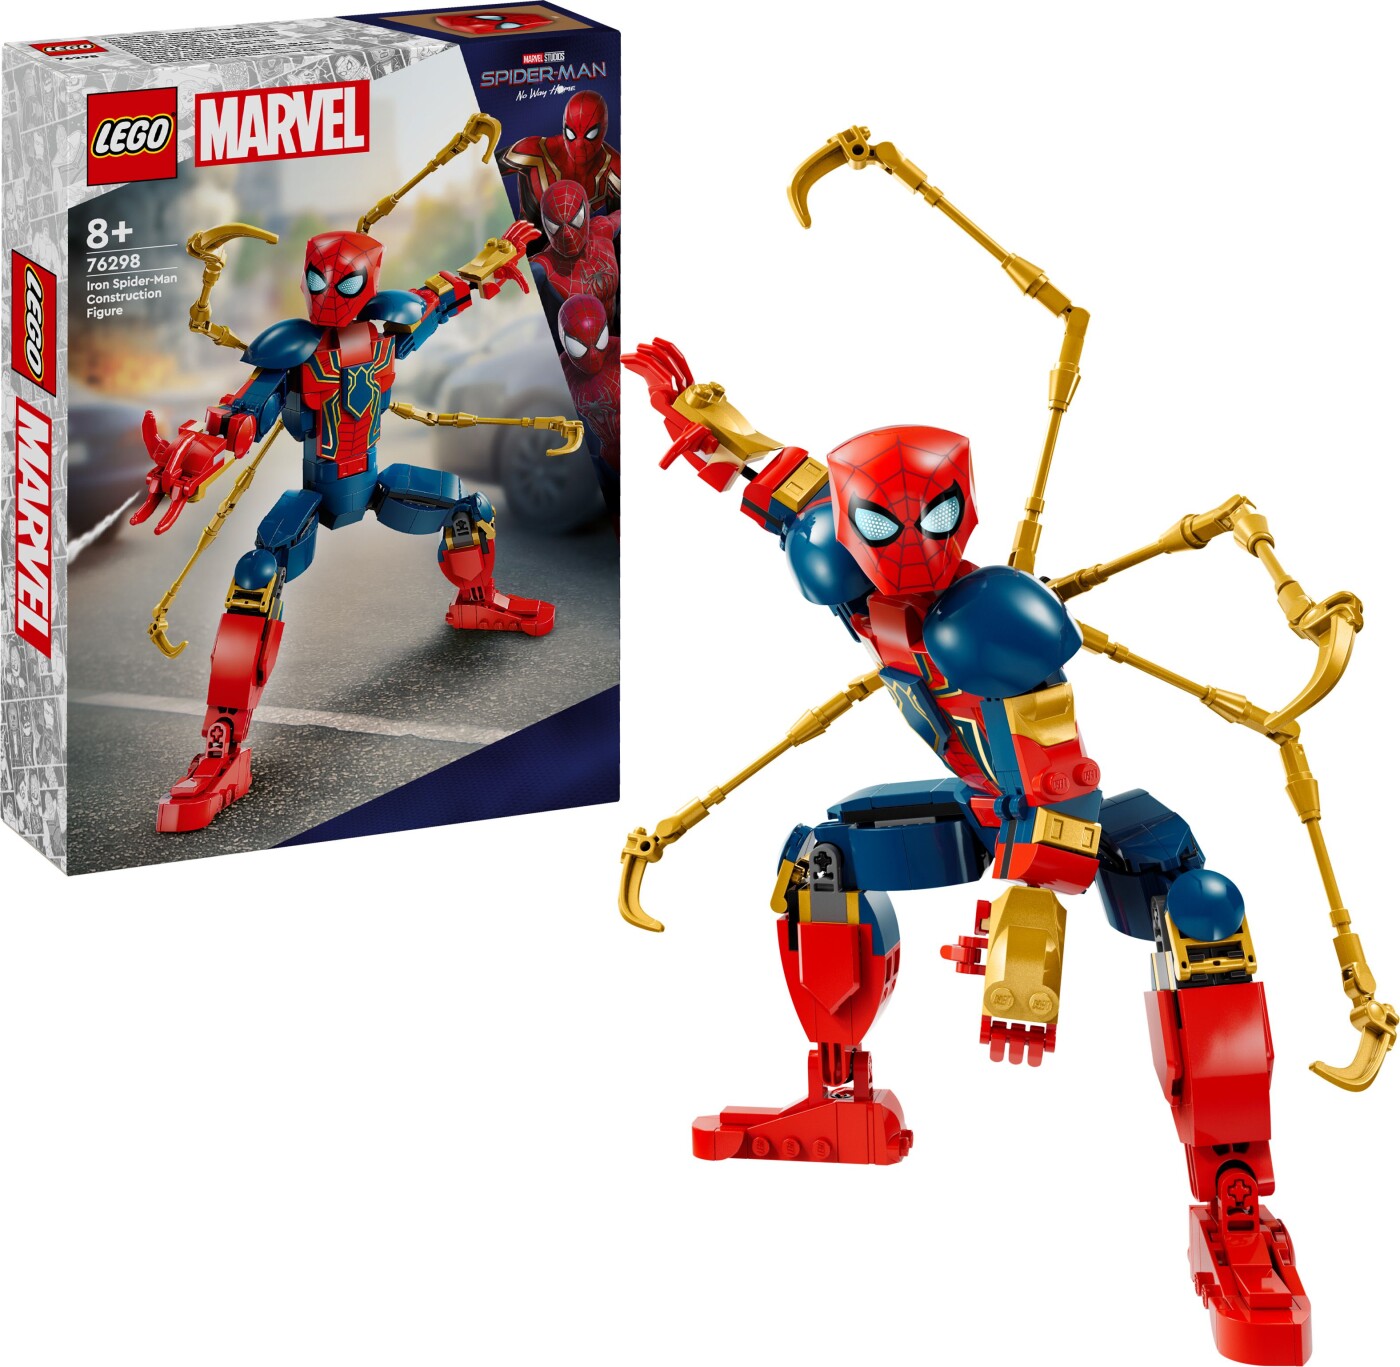 Billede af Lego Super Heroes - Byg Selv-figur Af Iron Spider-man (76298) hos Gucca.dk